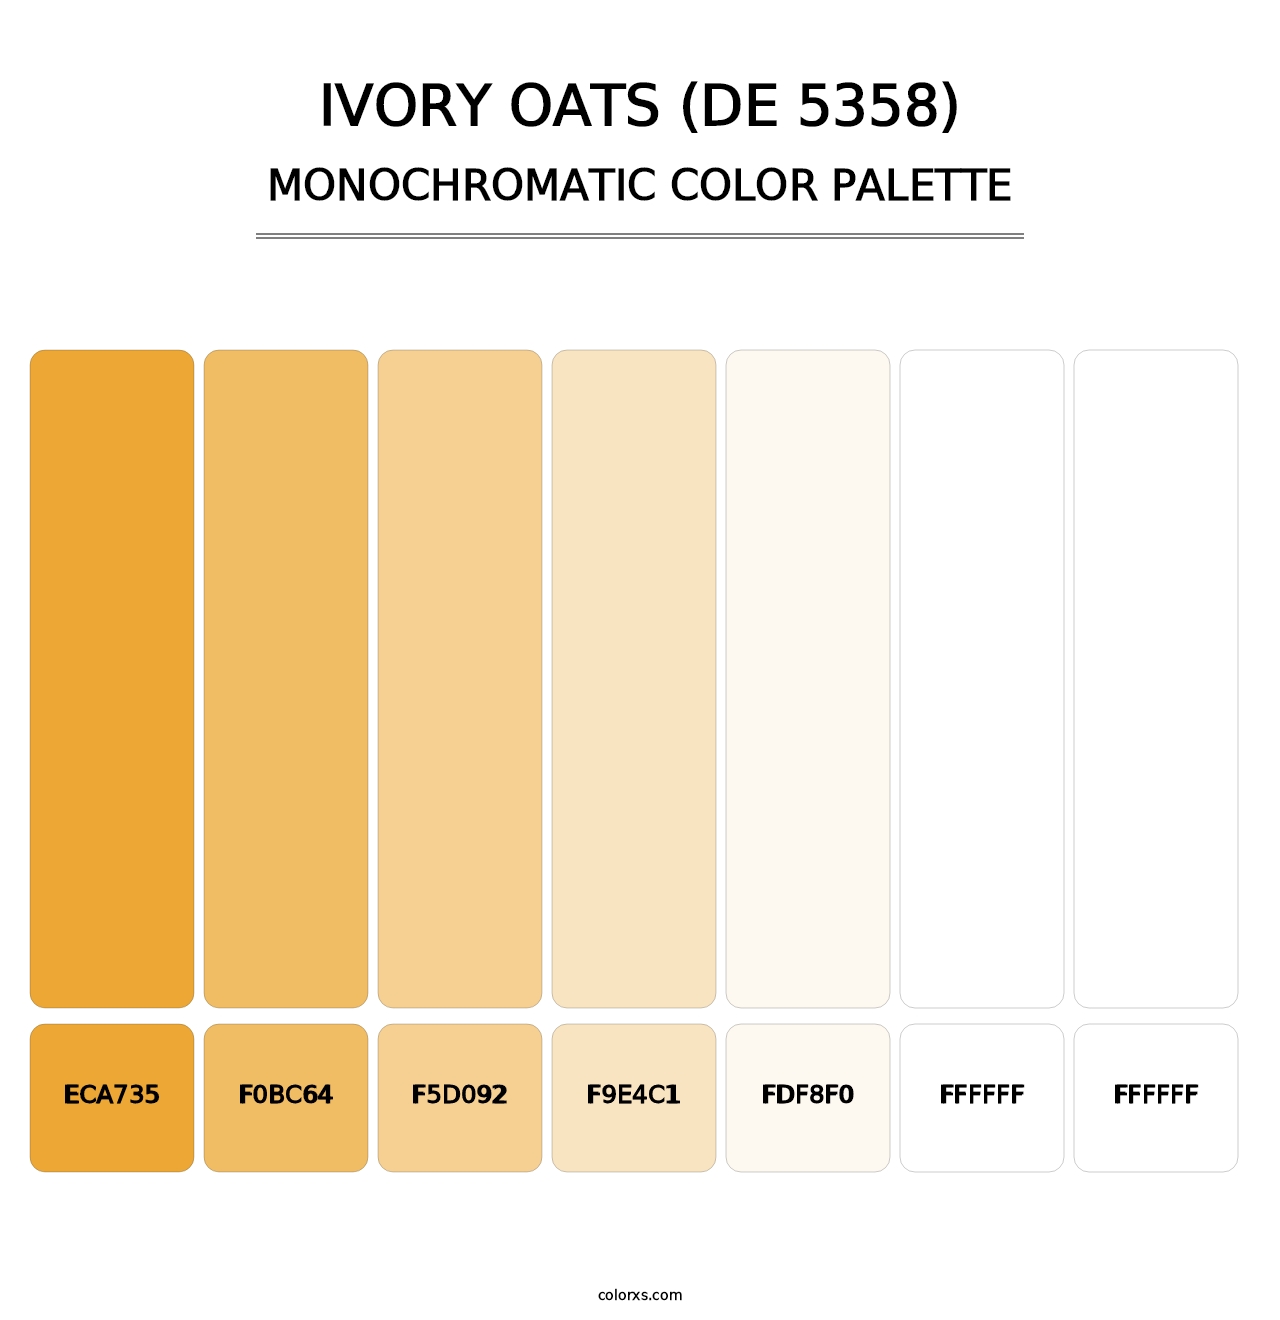 Ivory Oats (DE 5358) - Monochromatic Color Palette